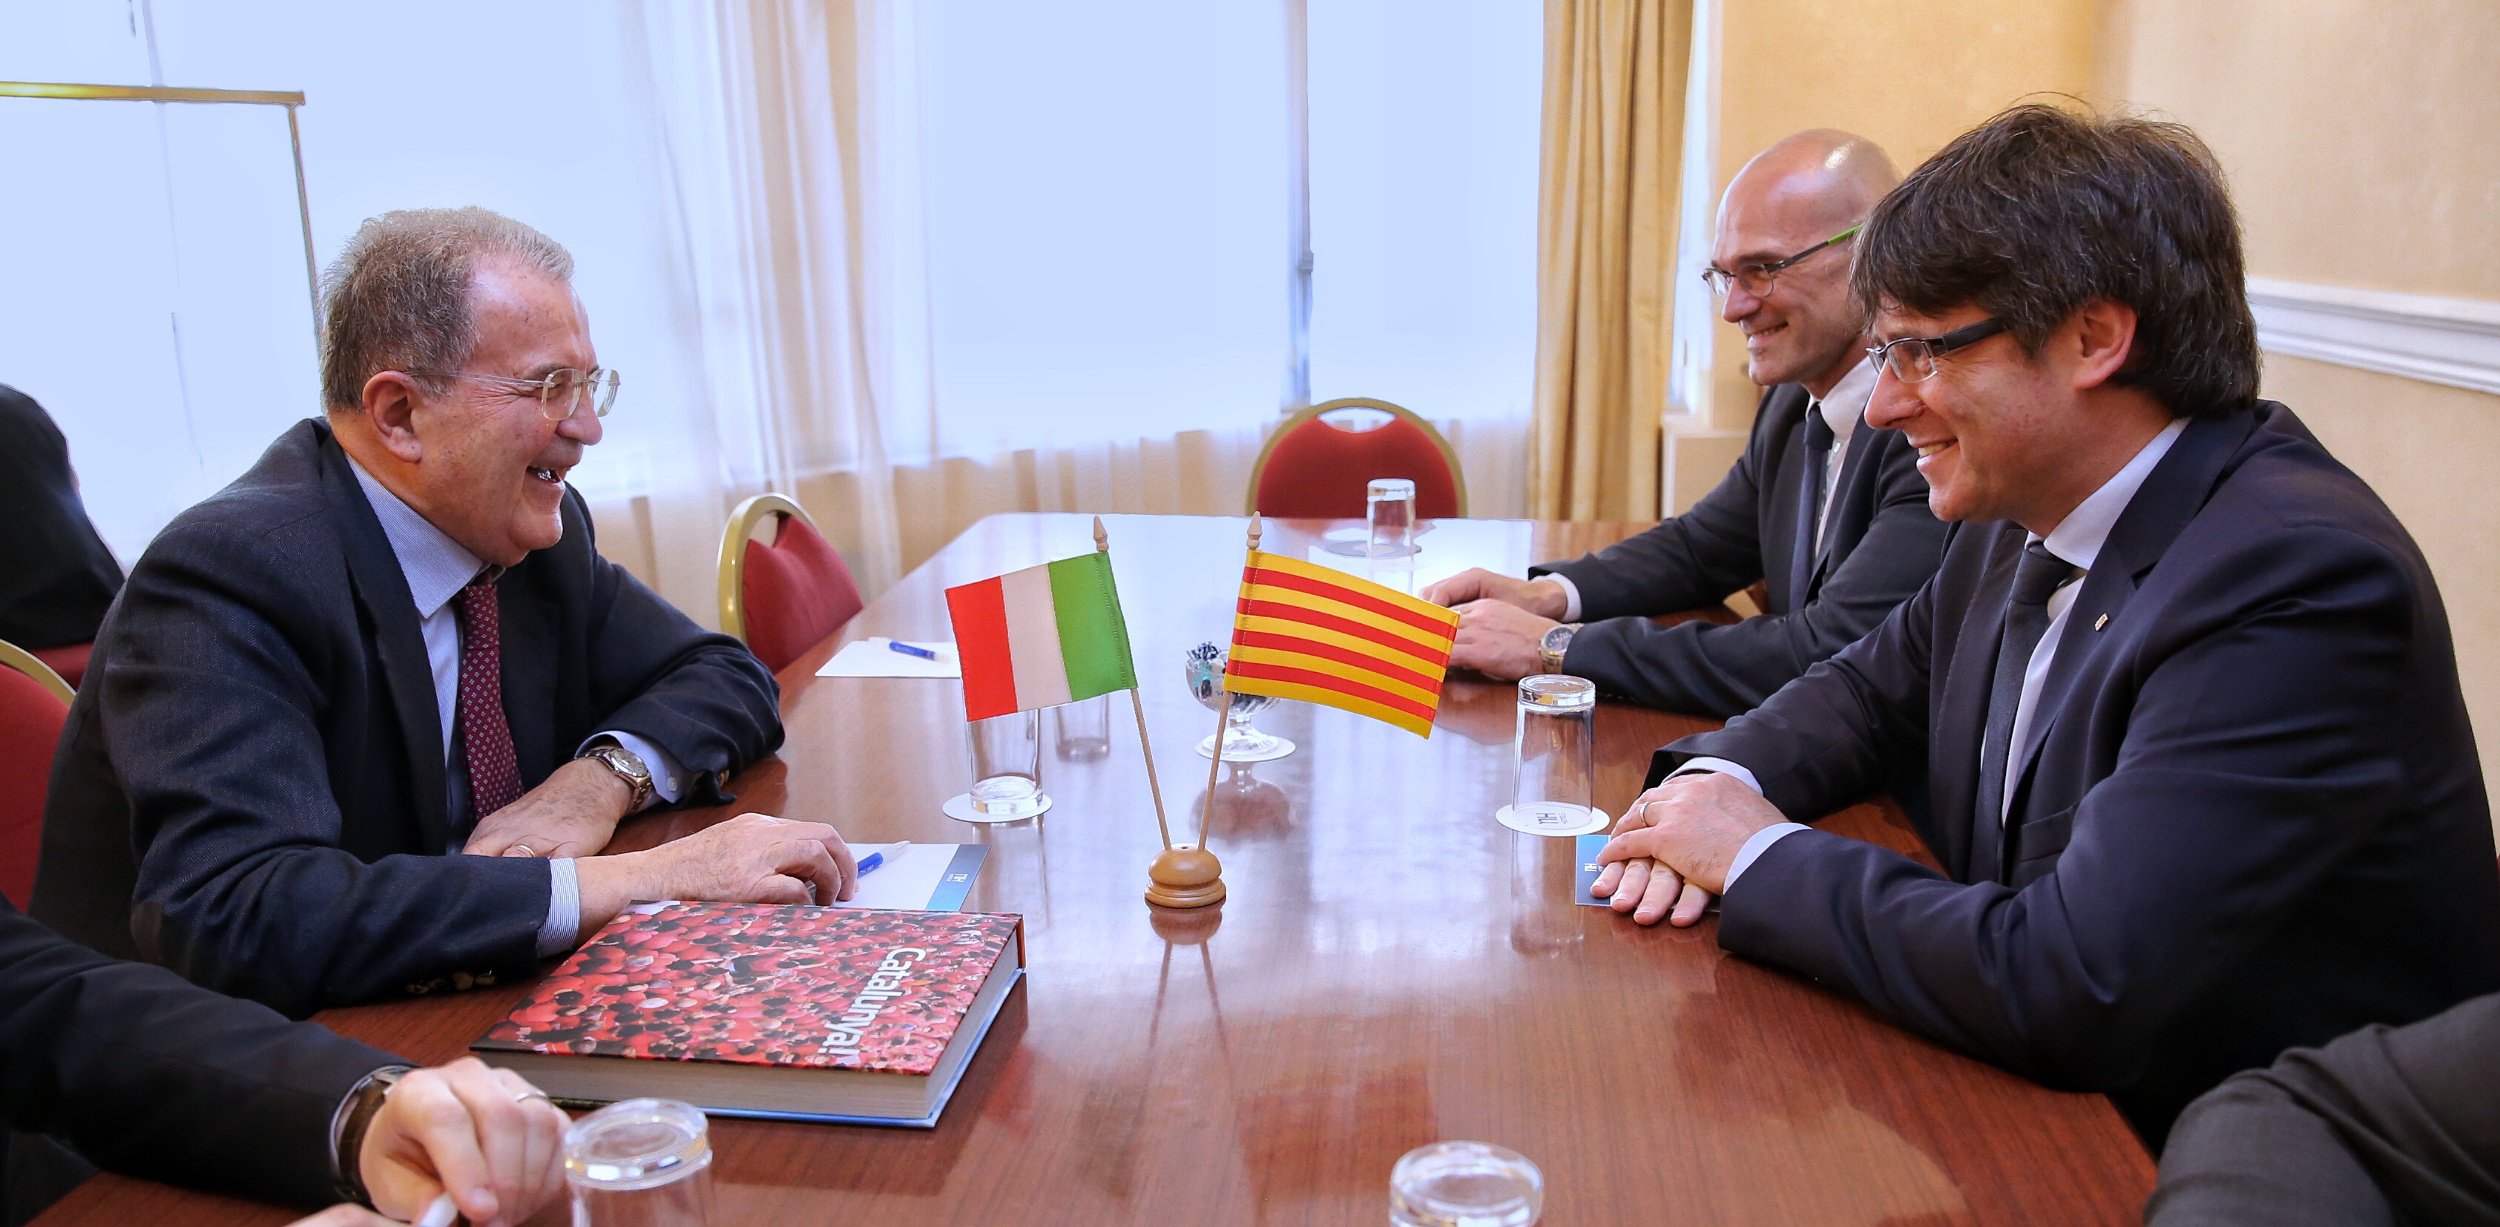 Prodi reclama "el retorno al diálogo" entre los gobiernos catalán y español